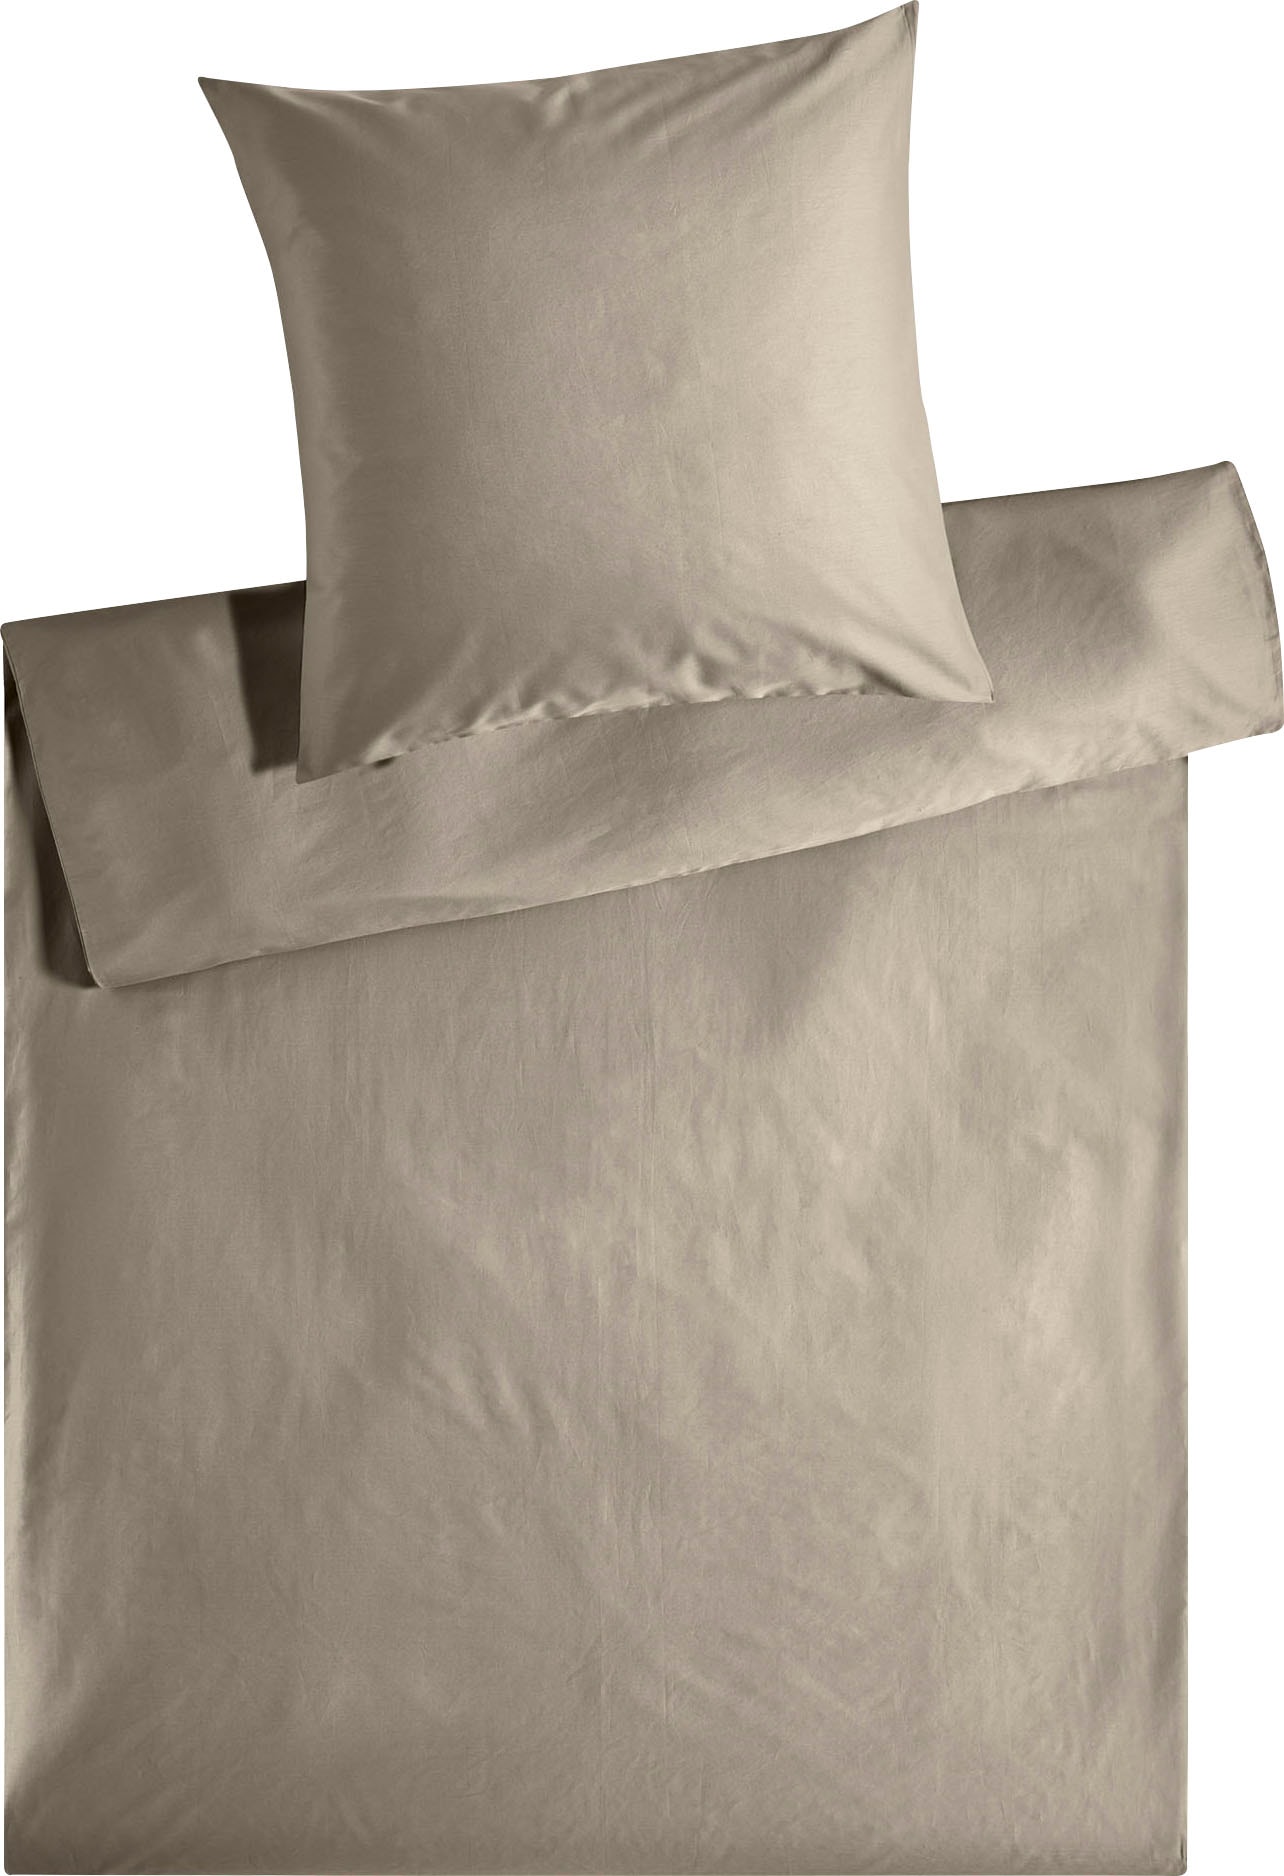 Kneer Bettwäsche »Edel-Satin Uni in 135x200, 155x220 oder 200x200 cm«, (3 tlg.), Bettwäsche aus Baumwolle in Satin-Qualität, unifarbene Bettwäsche